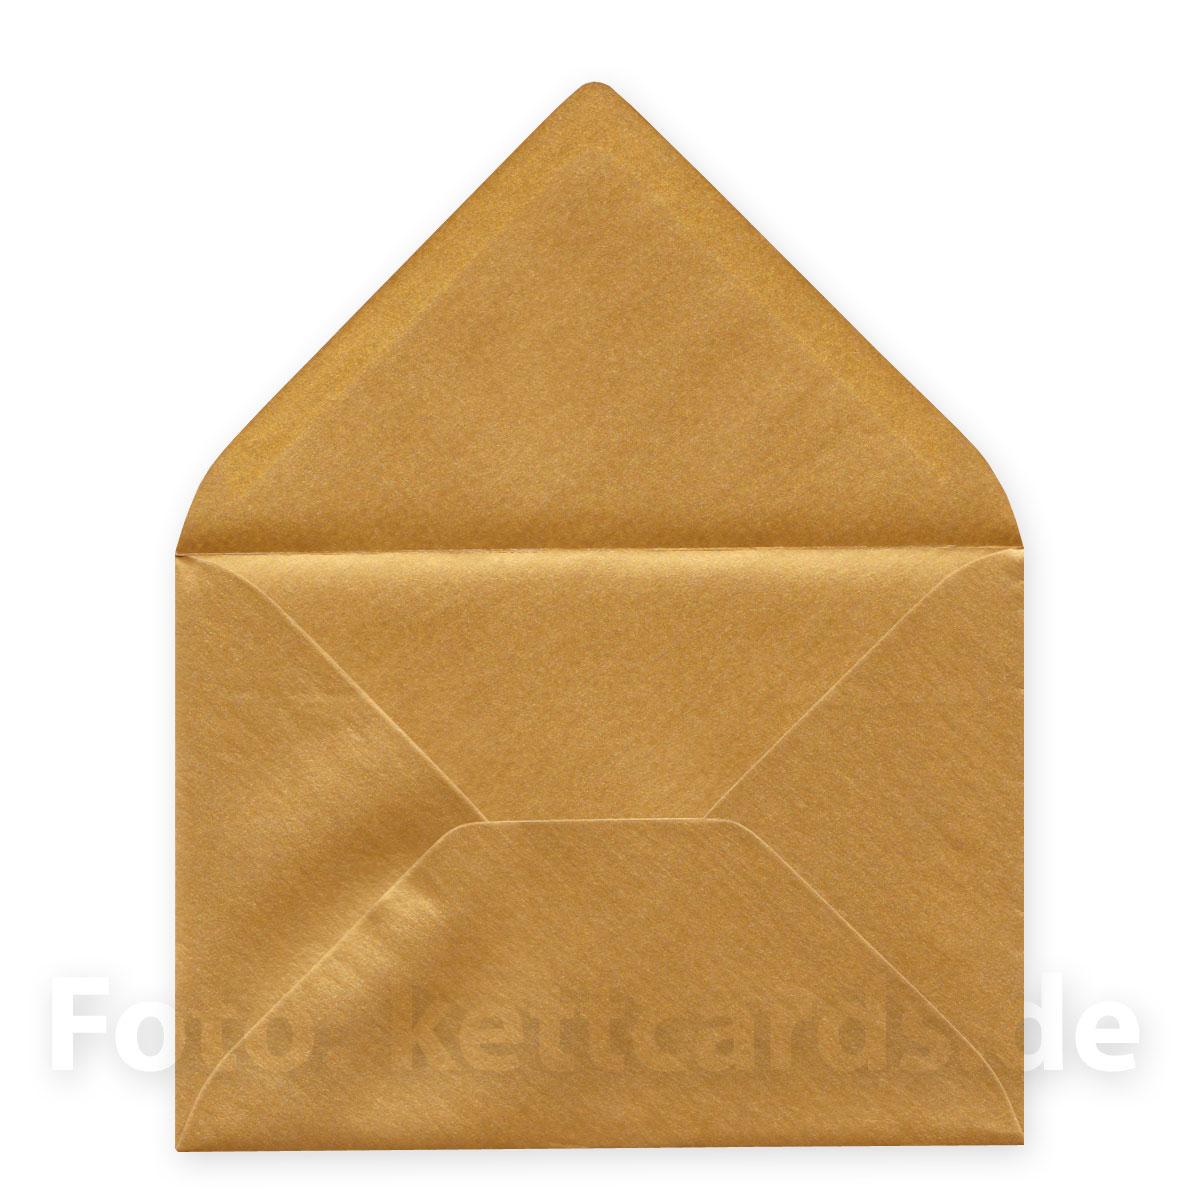 10 Recycling-Glückwunschkarten mit goldenen Kuverts: Viel Glück viel Segen!